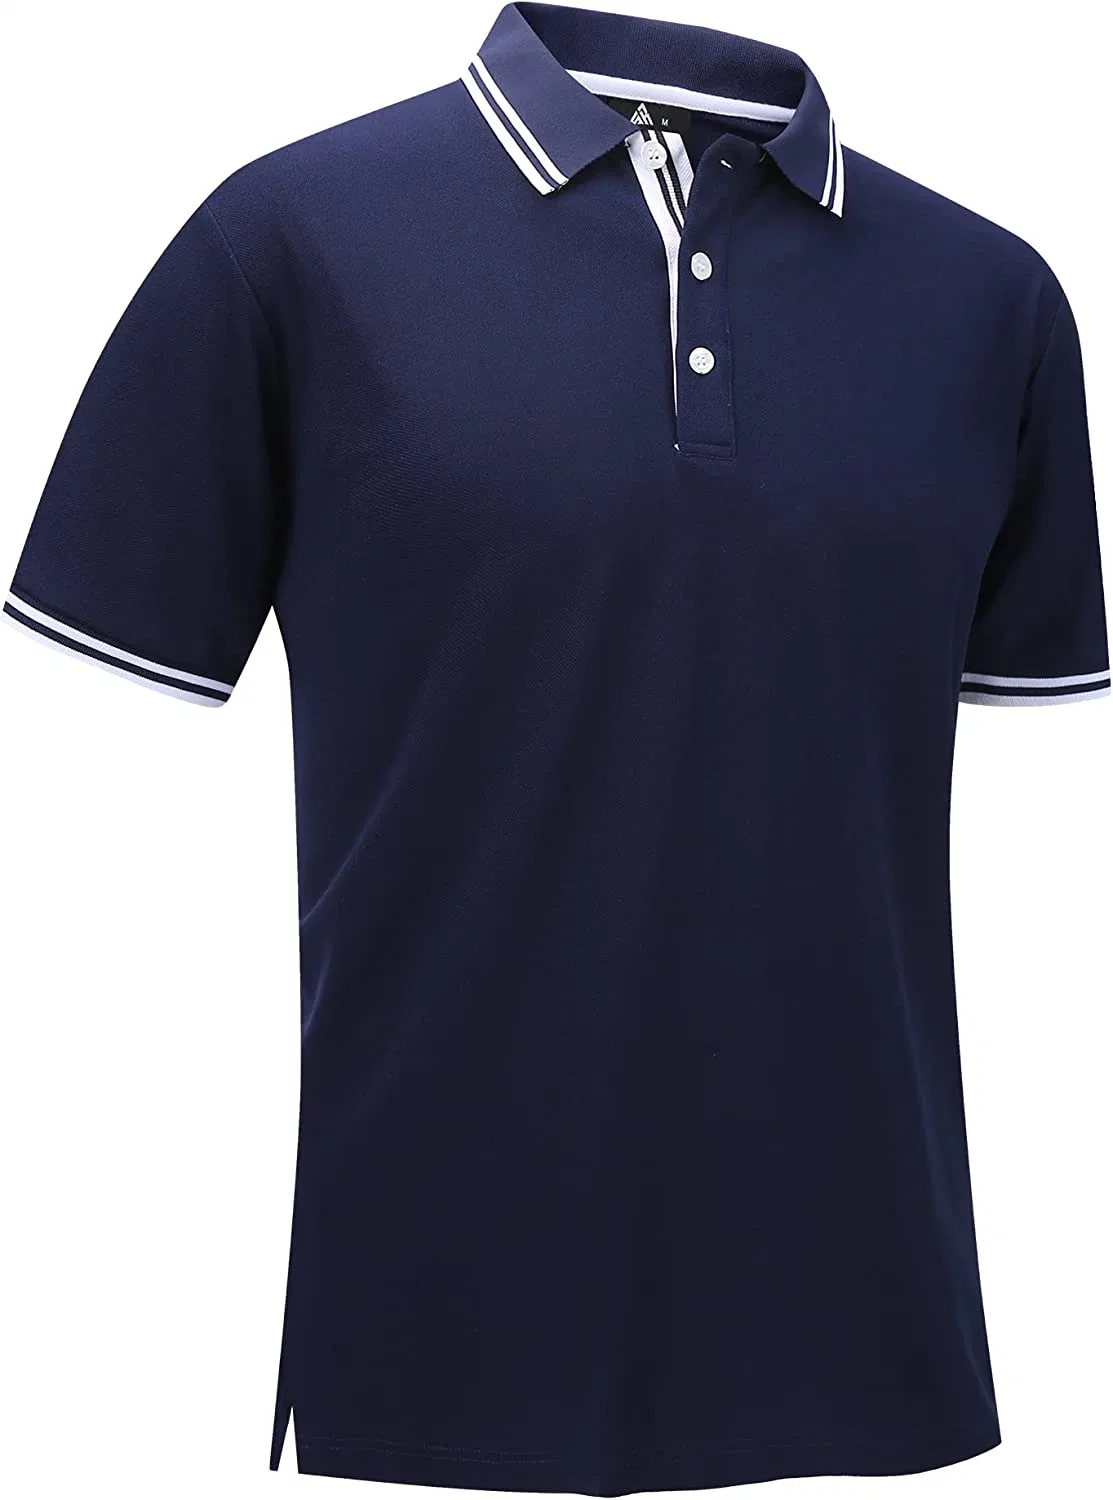 Golf Polo für Männer Kurzarm feuchtigkeitsableitend Sommer Casual Kragthemden Tennis Shirts